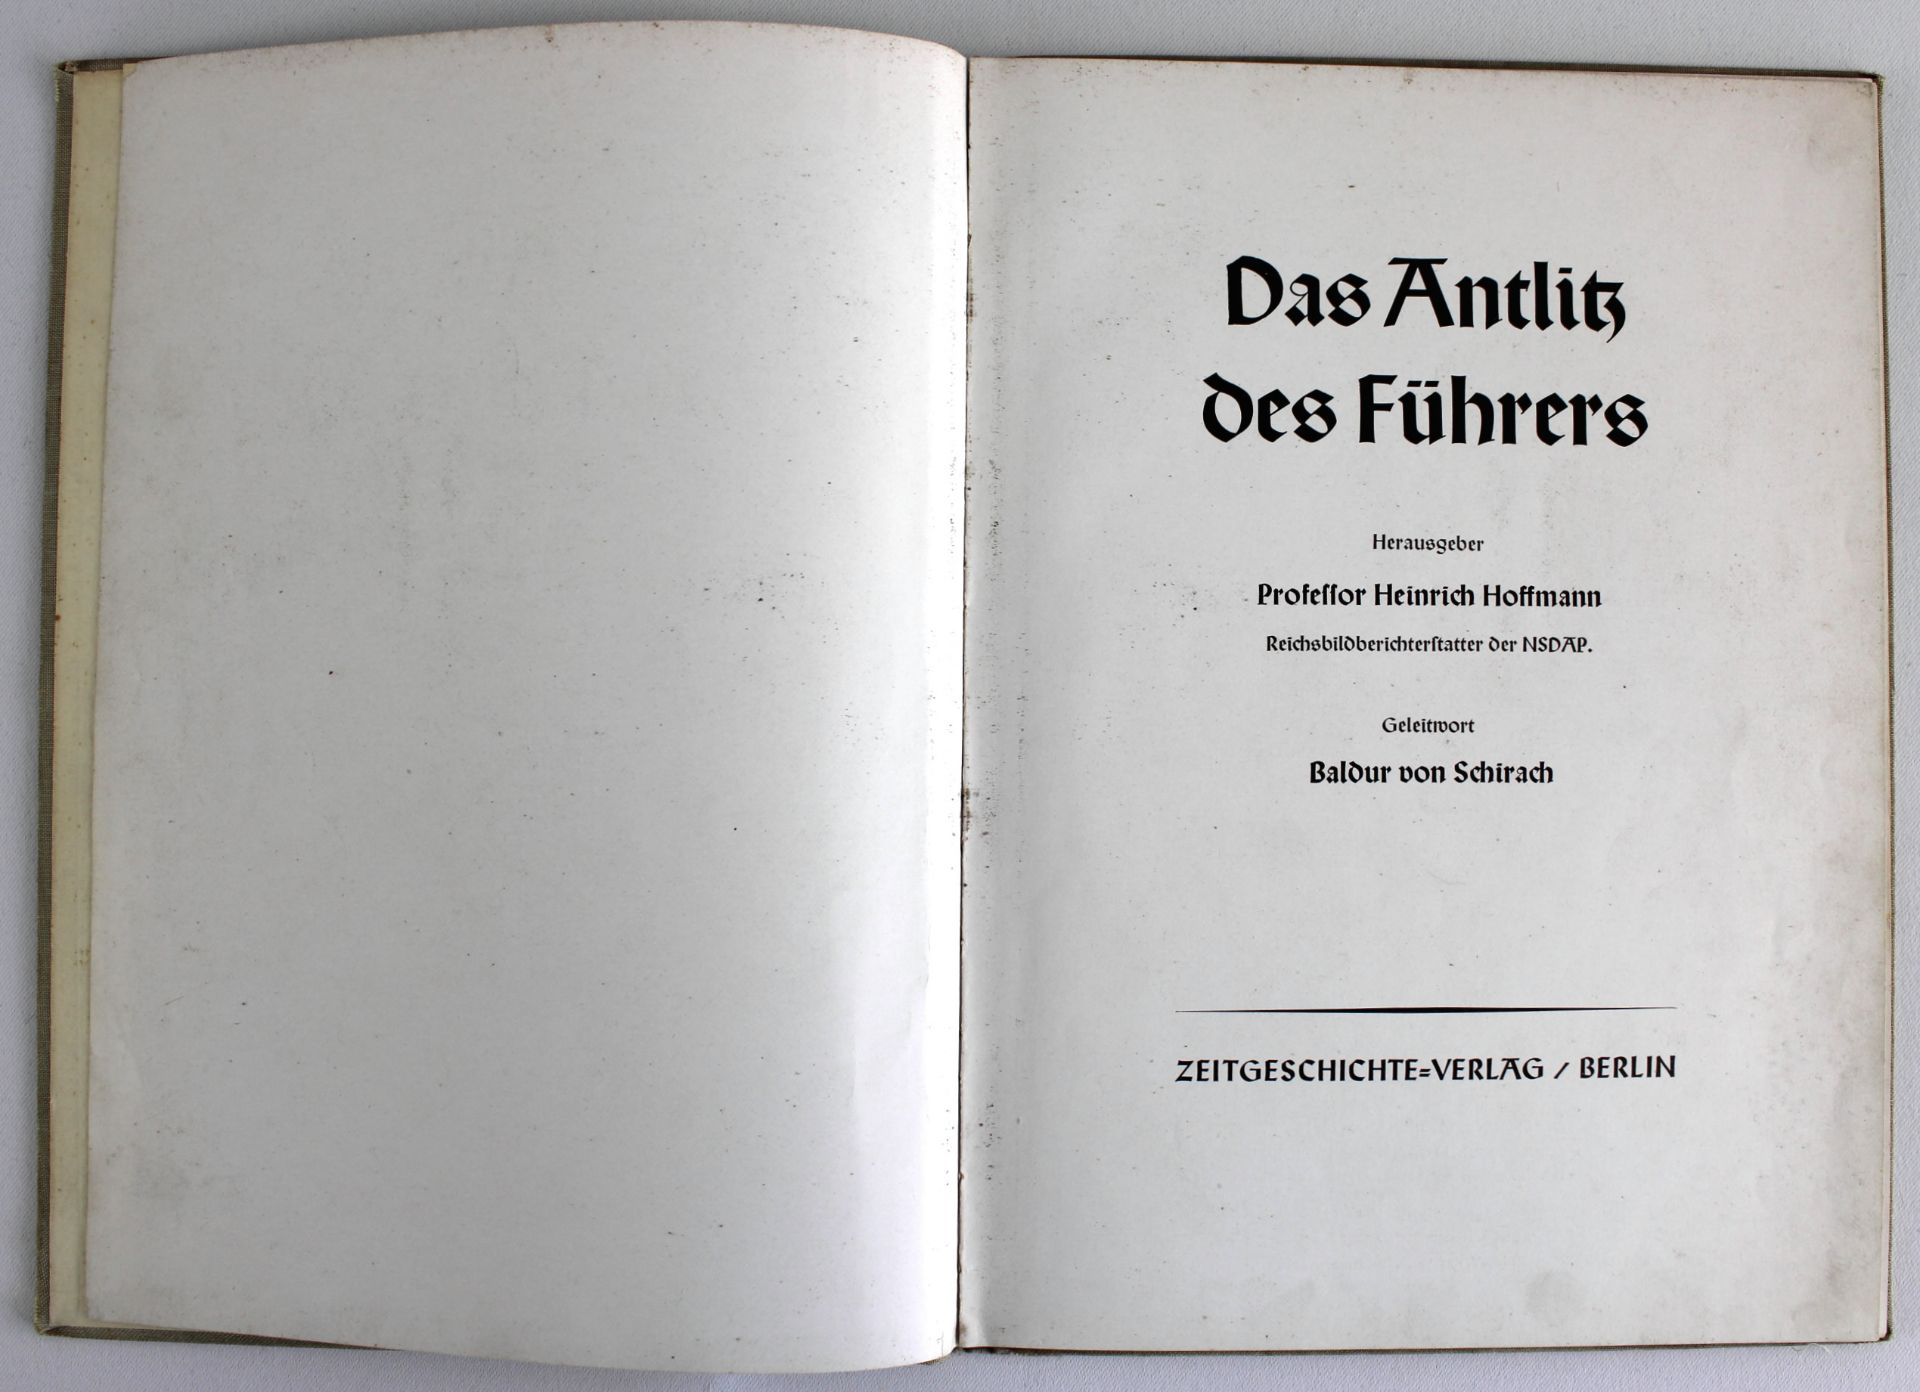 Bildband "Das Antlitz des Führers" Heinrich Hoffmann, Zeitgeschichte-Verlag, Berlin 1939 - Image 2 of 3